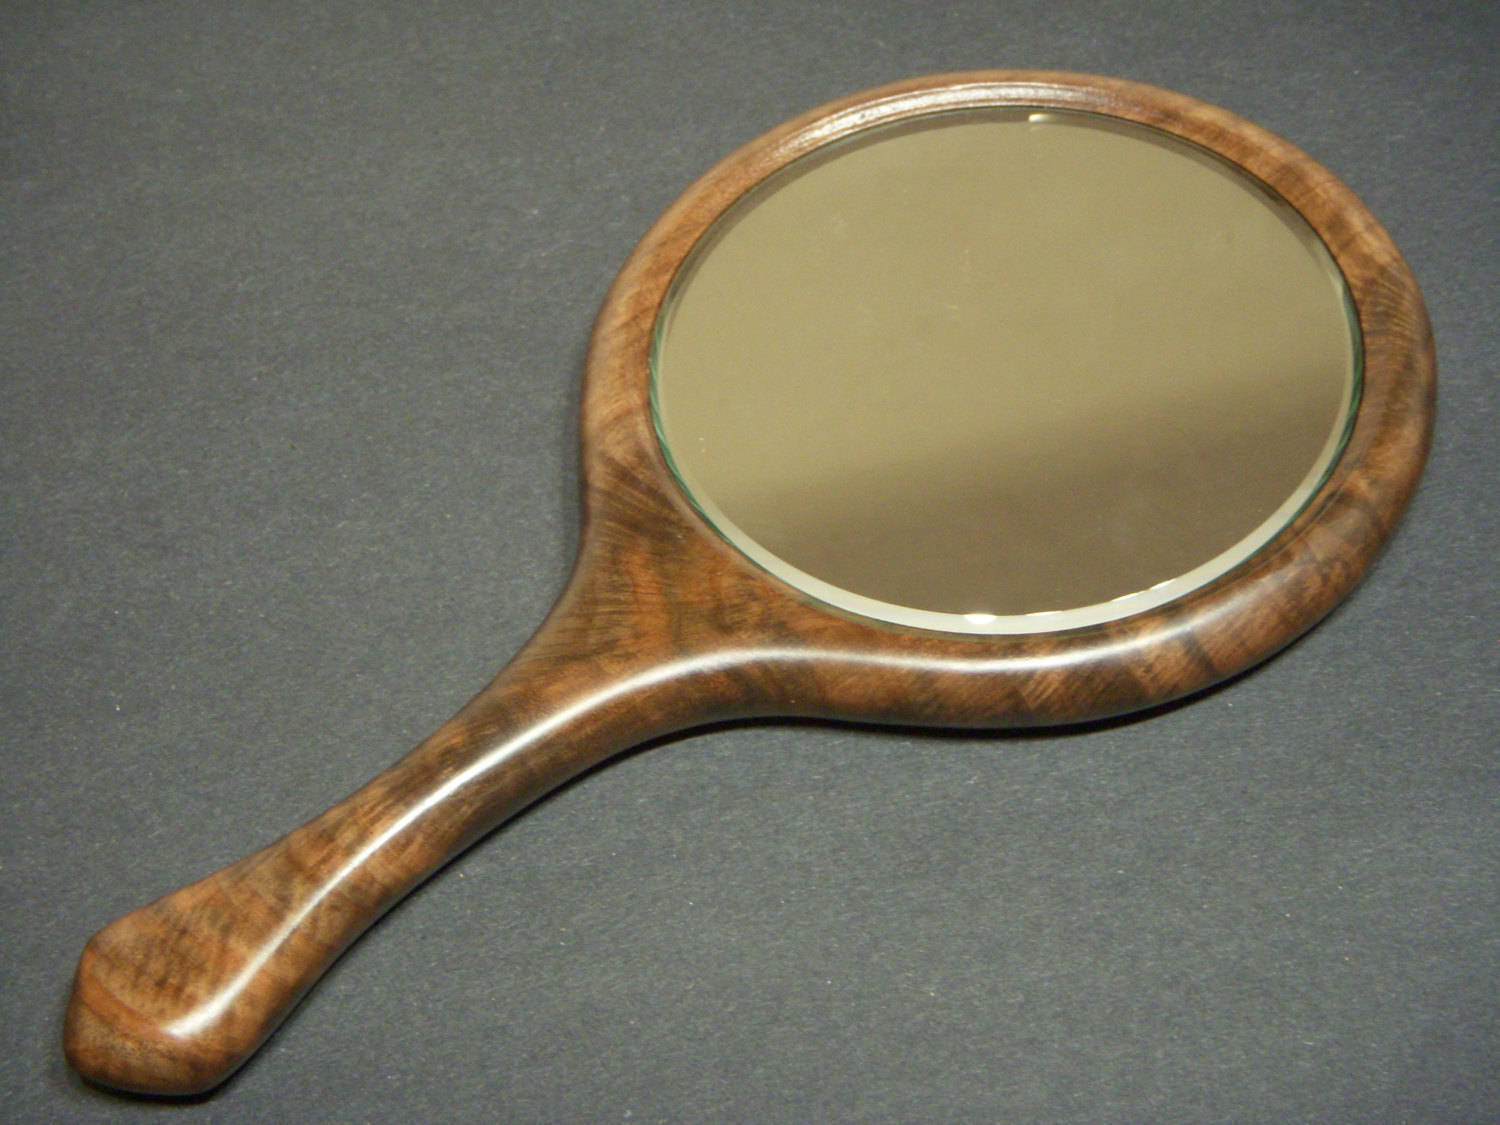 Walnut Mirror, Hand Mirror, Wall Mirror, Vanity Mirror, Bathroom Mirror, Wood Mirror Highly Figured Oregon Black Walnut Wood Made in USA